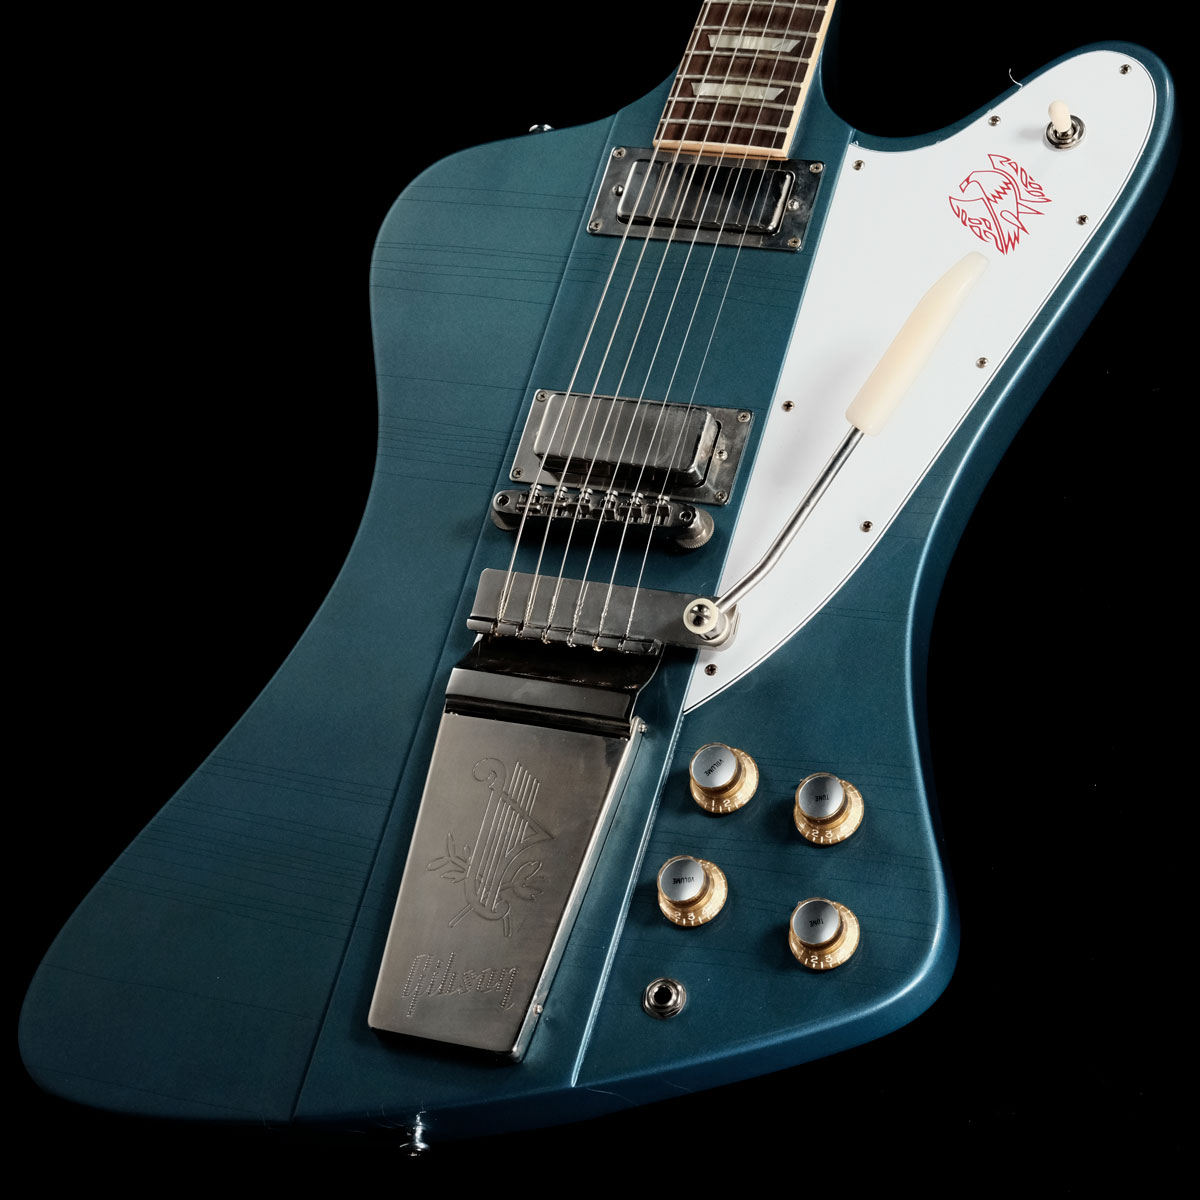 「Murphy Lab Collection」の「1963 Firebird V w/Maestro Vibrola Ultra Light Aged Pelham Blue」が入荷！ エイジングの渋さと鮮やかなブルーが印象的な「Pelham Blue」フィニッシュがクールな一本！ エイジングのレベルは「Ultra Light Aged」で、ウェザーチェック、ライトエイジド・ハードウェアといった経時変化によるオーセンティックなヴィンテージ・ギターのルックスを再現しております。 ネック・グリップはハイポジションにやや厚みのある「Authentic '63 Medium C-Shape」を採用し、Murphy Lab製品にのみ施される「ロールド・バインディング」により、ヴィンテージ特有のプレイ・フィーリングも再現している点も注目です！ ゴージャスなルックスも併せ持つこちらのファイヤーバード、是非ロックバンドでガッツリ鳴らして頂きたい一本です！ 主な仕様 Body Material : 9-ply Mahogany/Walnut Neck-Through Neck Material : 9-ply Mahogany/Walnut Neck-Through Neck Profile : Authentic '63 Medium C-Shape Scale Length : 24.75" / 628.65mm Fingerboard Material : Indian Rosewood, Hide Glue Fit Fingerboard Radius : 12" Number Of Frets : 22 Frets : Authentic Medium-Jumbo Nut Width : 1.69" / 42.85mm Hardware Finish : Nickel; Murphy Lab Light Aged Bridge : ABR-1 Tailpiece : Maestro Vibrola Tuning Machines : Deluxe Banjo Tuners Neck Pickup : Firebird Alnico 5 Bridge Pickup : Firebird Alnico 5 Controls : 2 Volume, 2 Tone, 500K CTS Potentiometers, Hand-Wired Harness Pickup Selector : 3-Way Switchcraft ■ シリアル : 302933■重量 : 3.96 kg■JAN : 4580568419965 ■付属品 : 認定証、ハードケース、正規保証（要ユーザー登録） 複数のサイトに掲載しておりますため、他のサイトにて既にご販売済みである場合もございます。 売却に伴う商品情報の削除は迅速を心掛けておりますが、ご注文後に万一売り切れとなっておりました際は誠に申し訳ございませんがご容赦くださいませ。